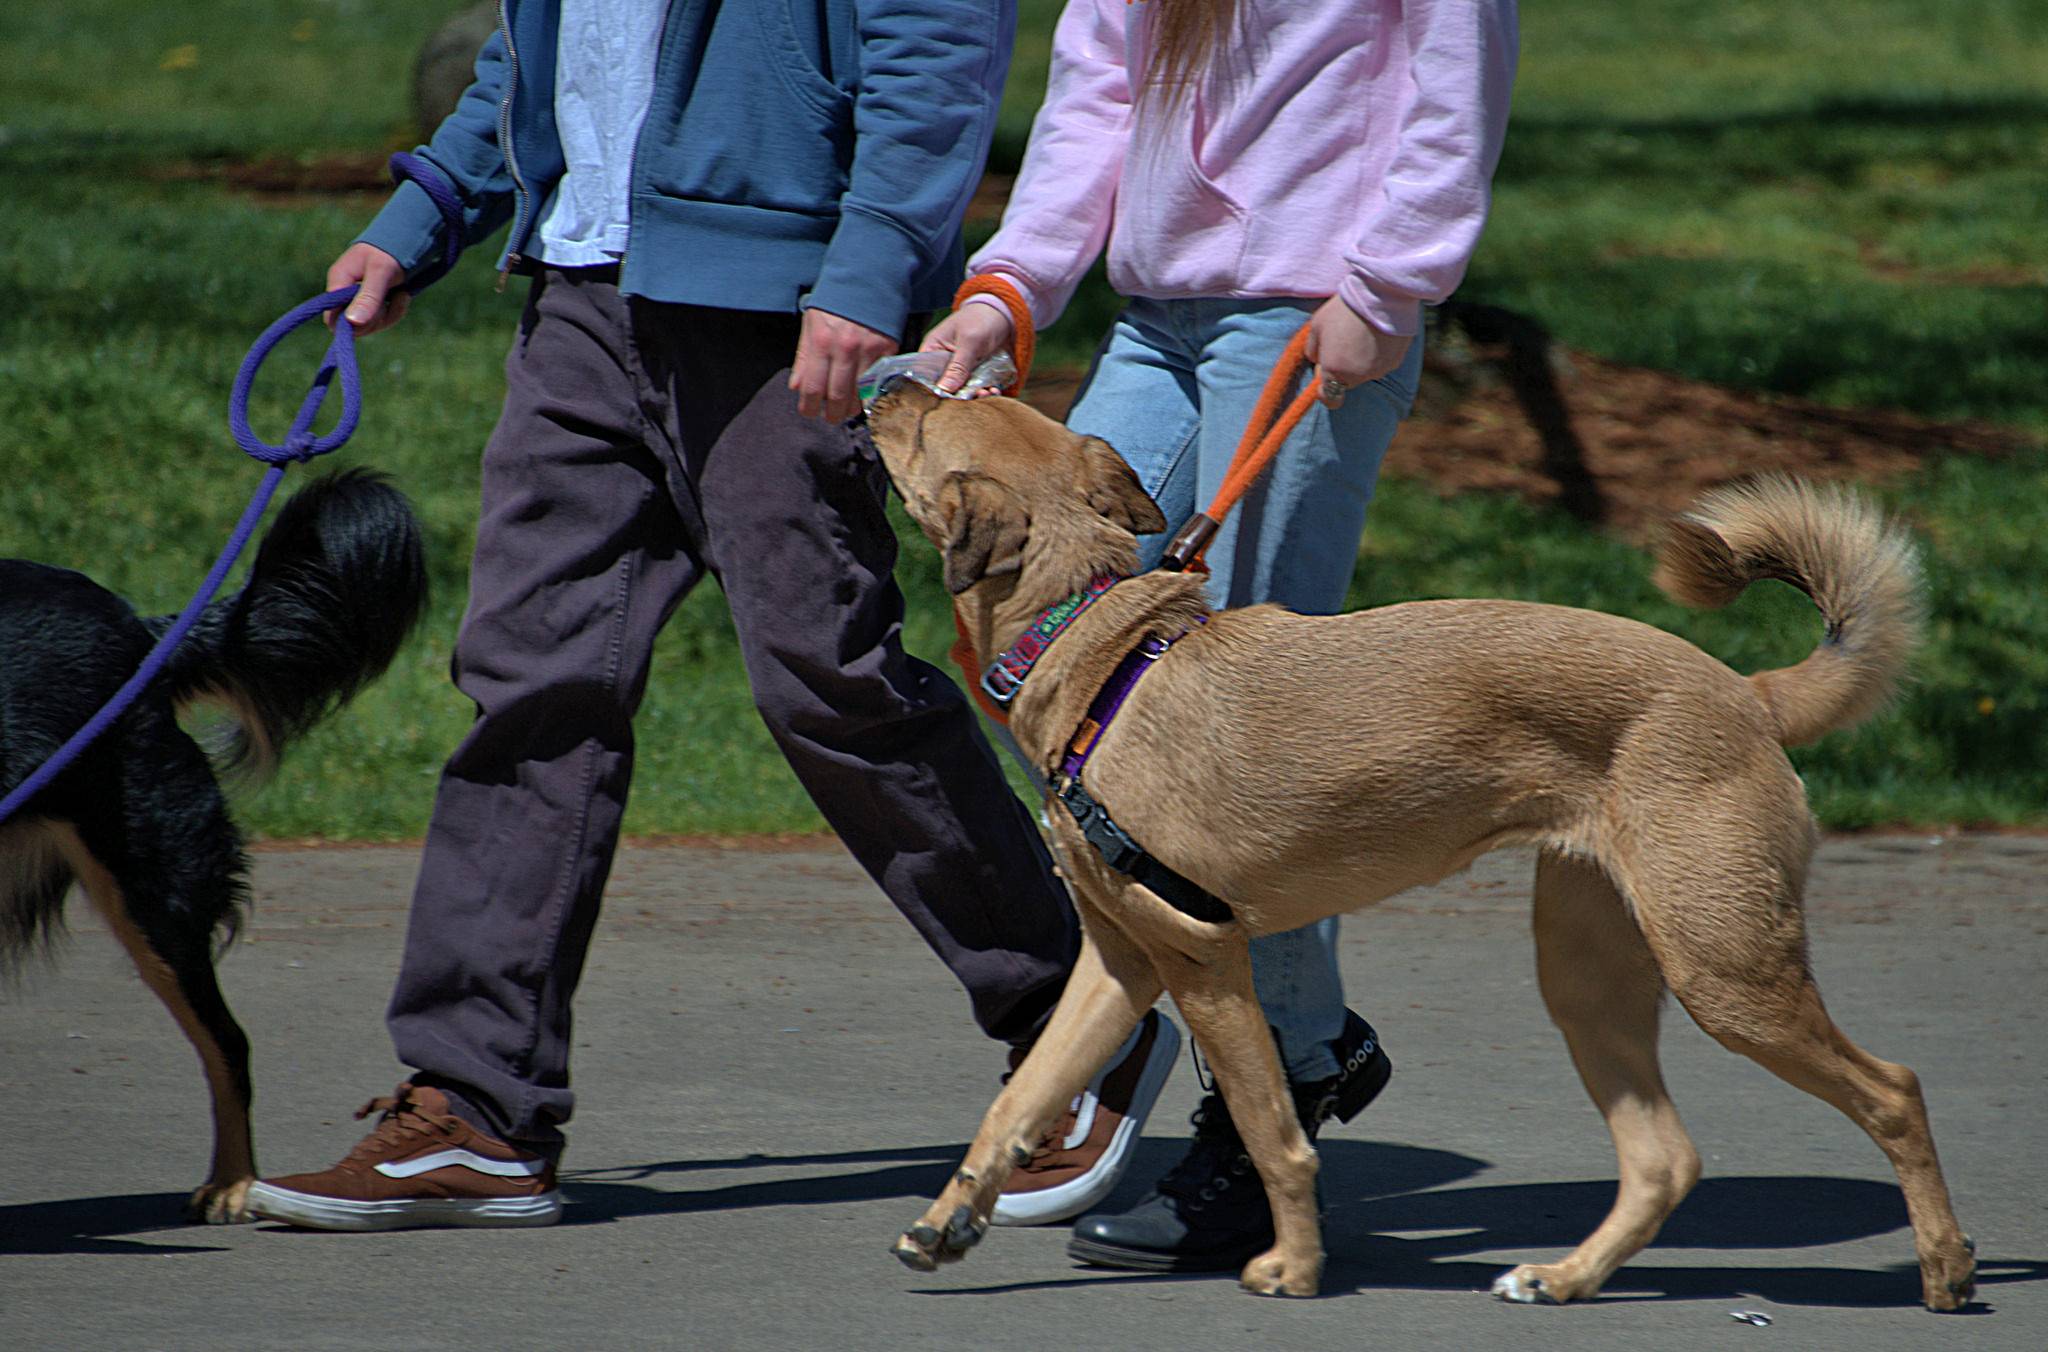 Как научить собаку ходить рядом и стать идеальным городским жителем. обучаем собаку команде «рядом» без поводка